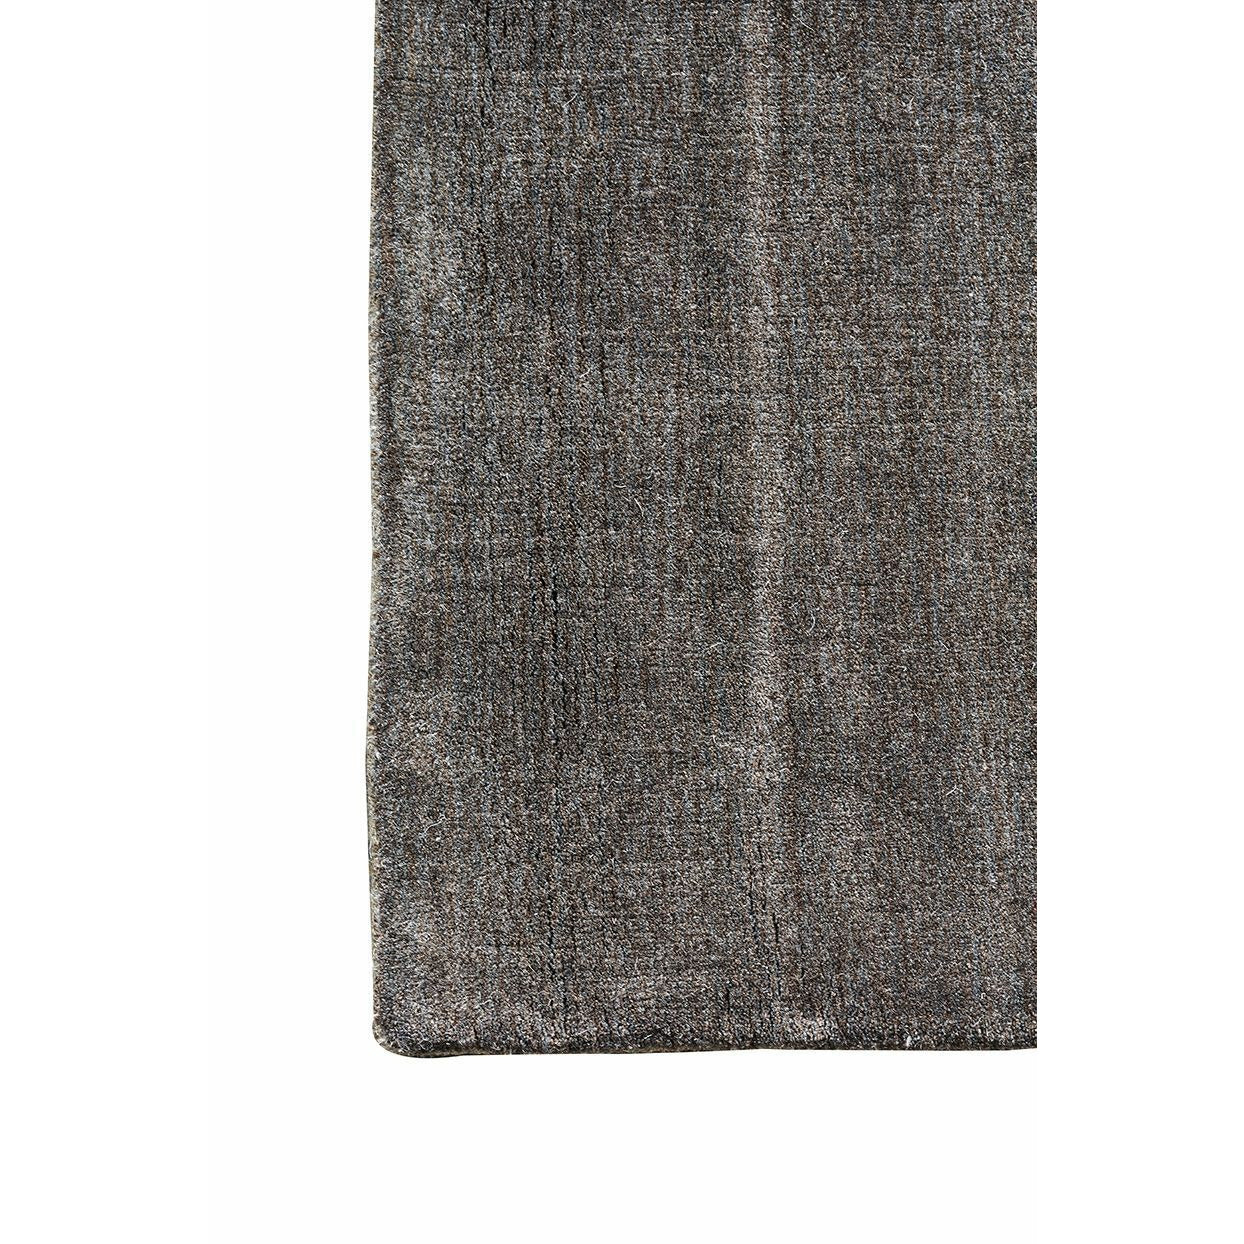 Massimo Maan bambu matto lämmin harmaa, 250x300 cm